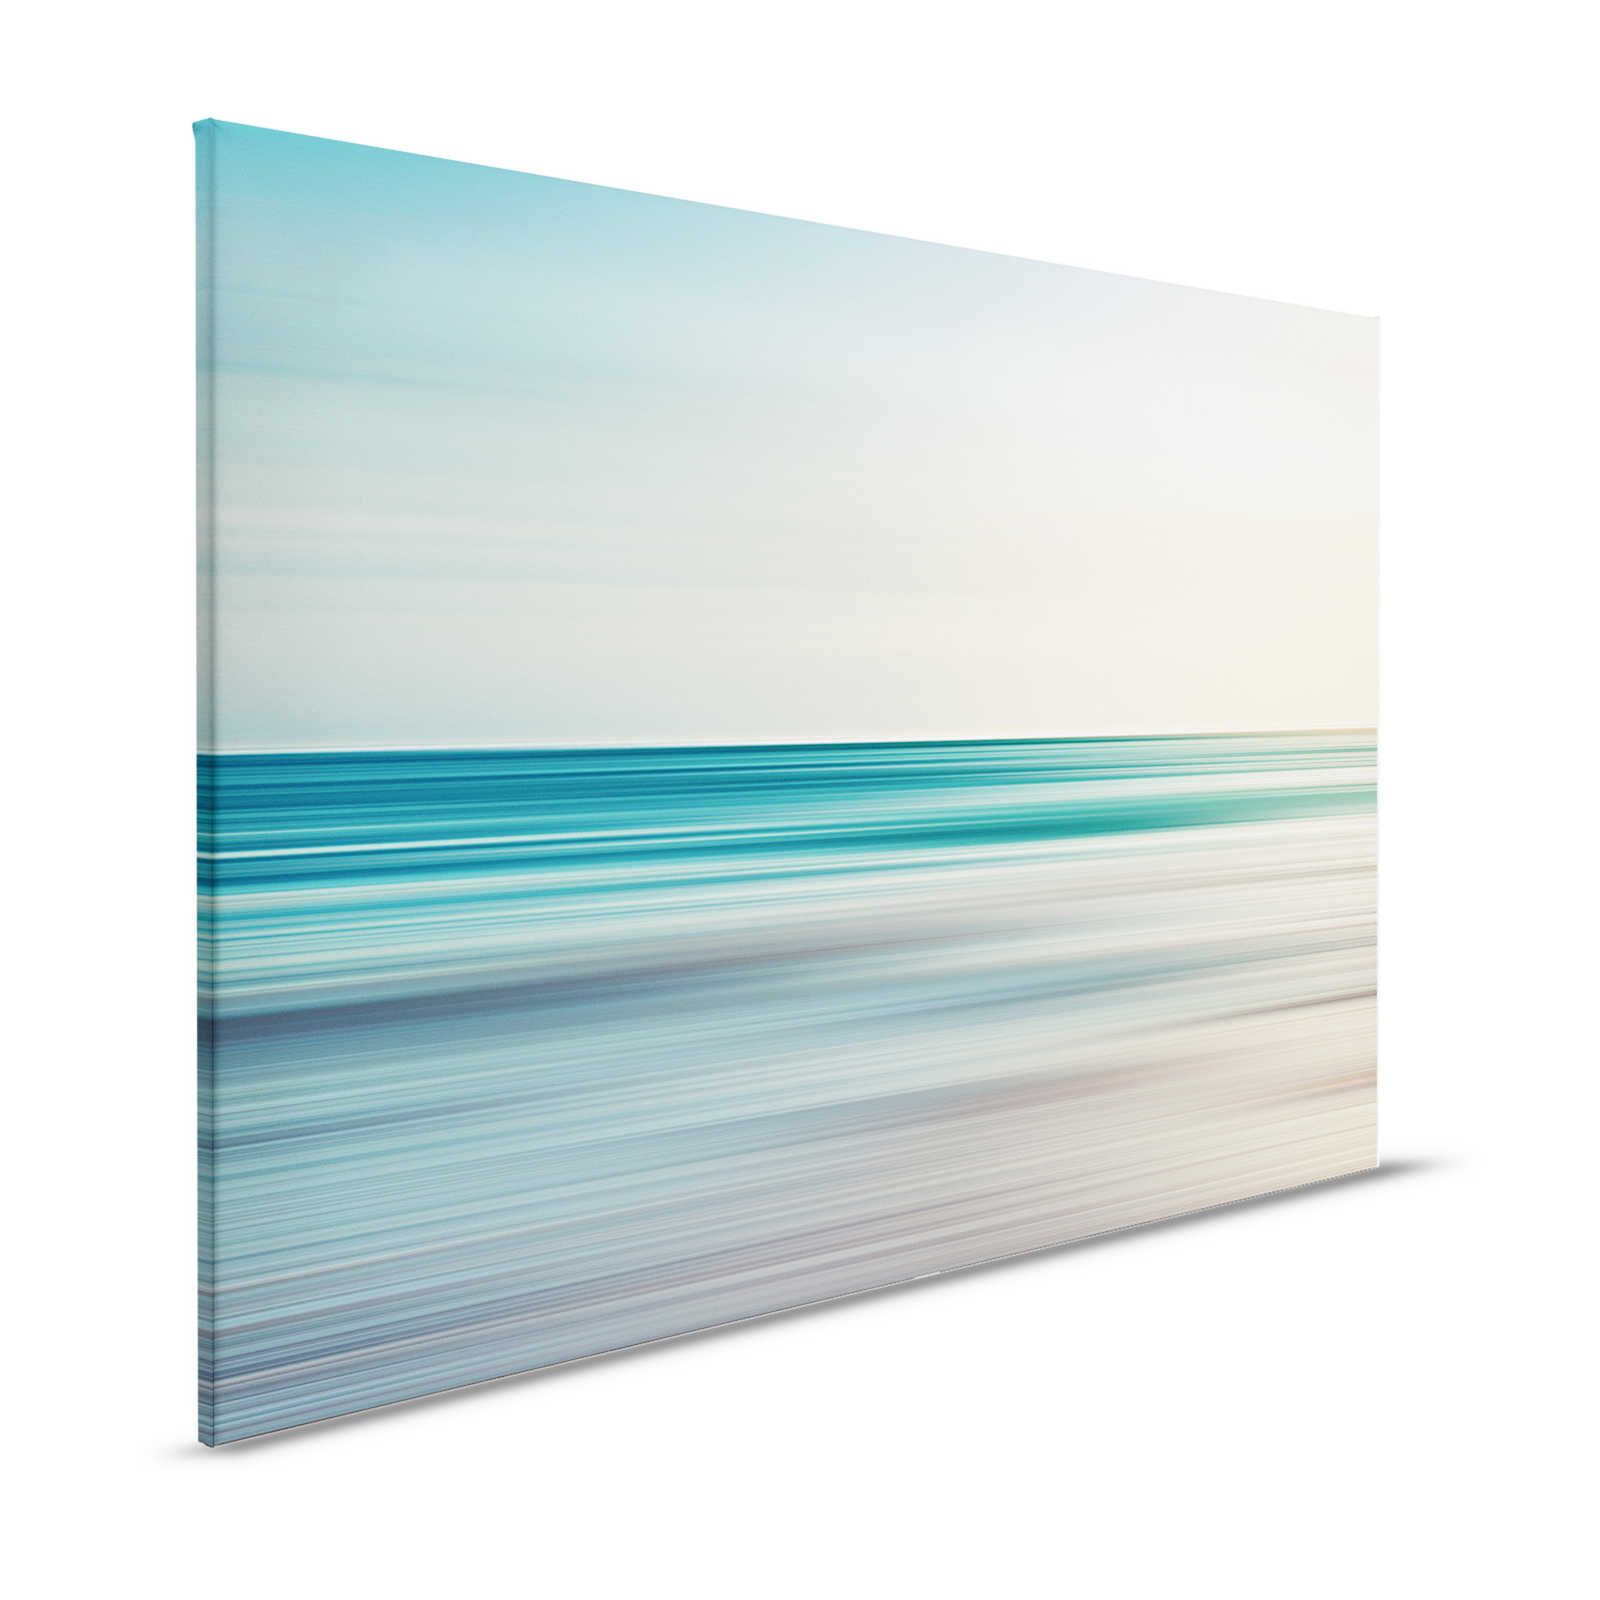 Horizon 1 - Quadro su tela con paesaggio astratto in blu - 1,20 m x 0,80 m
